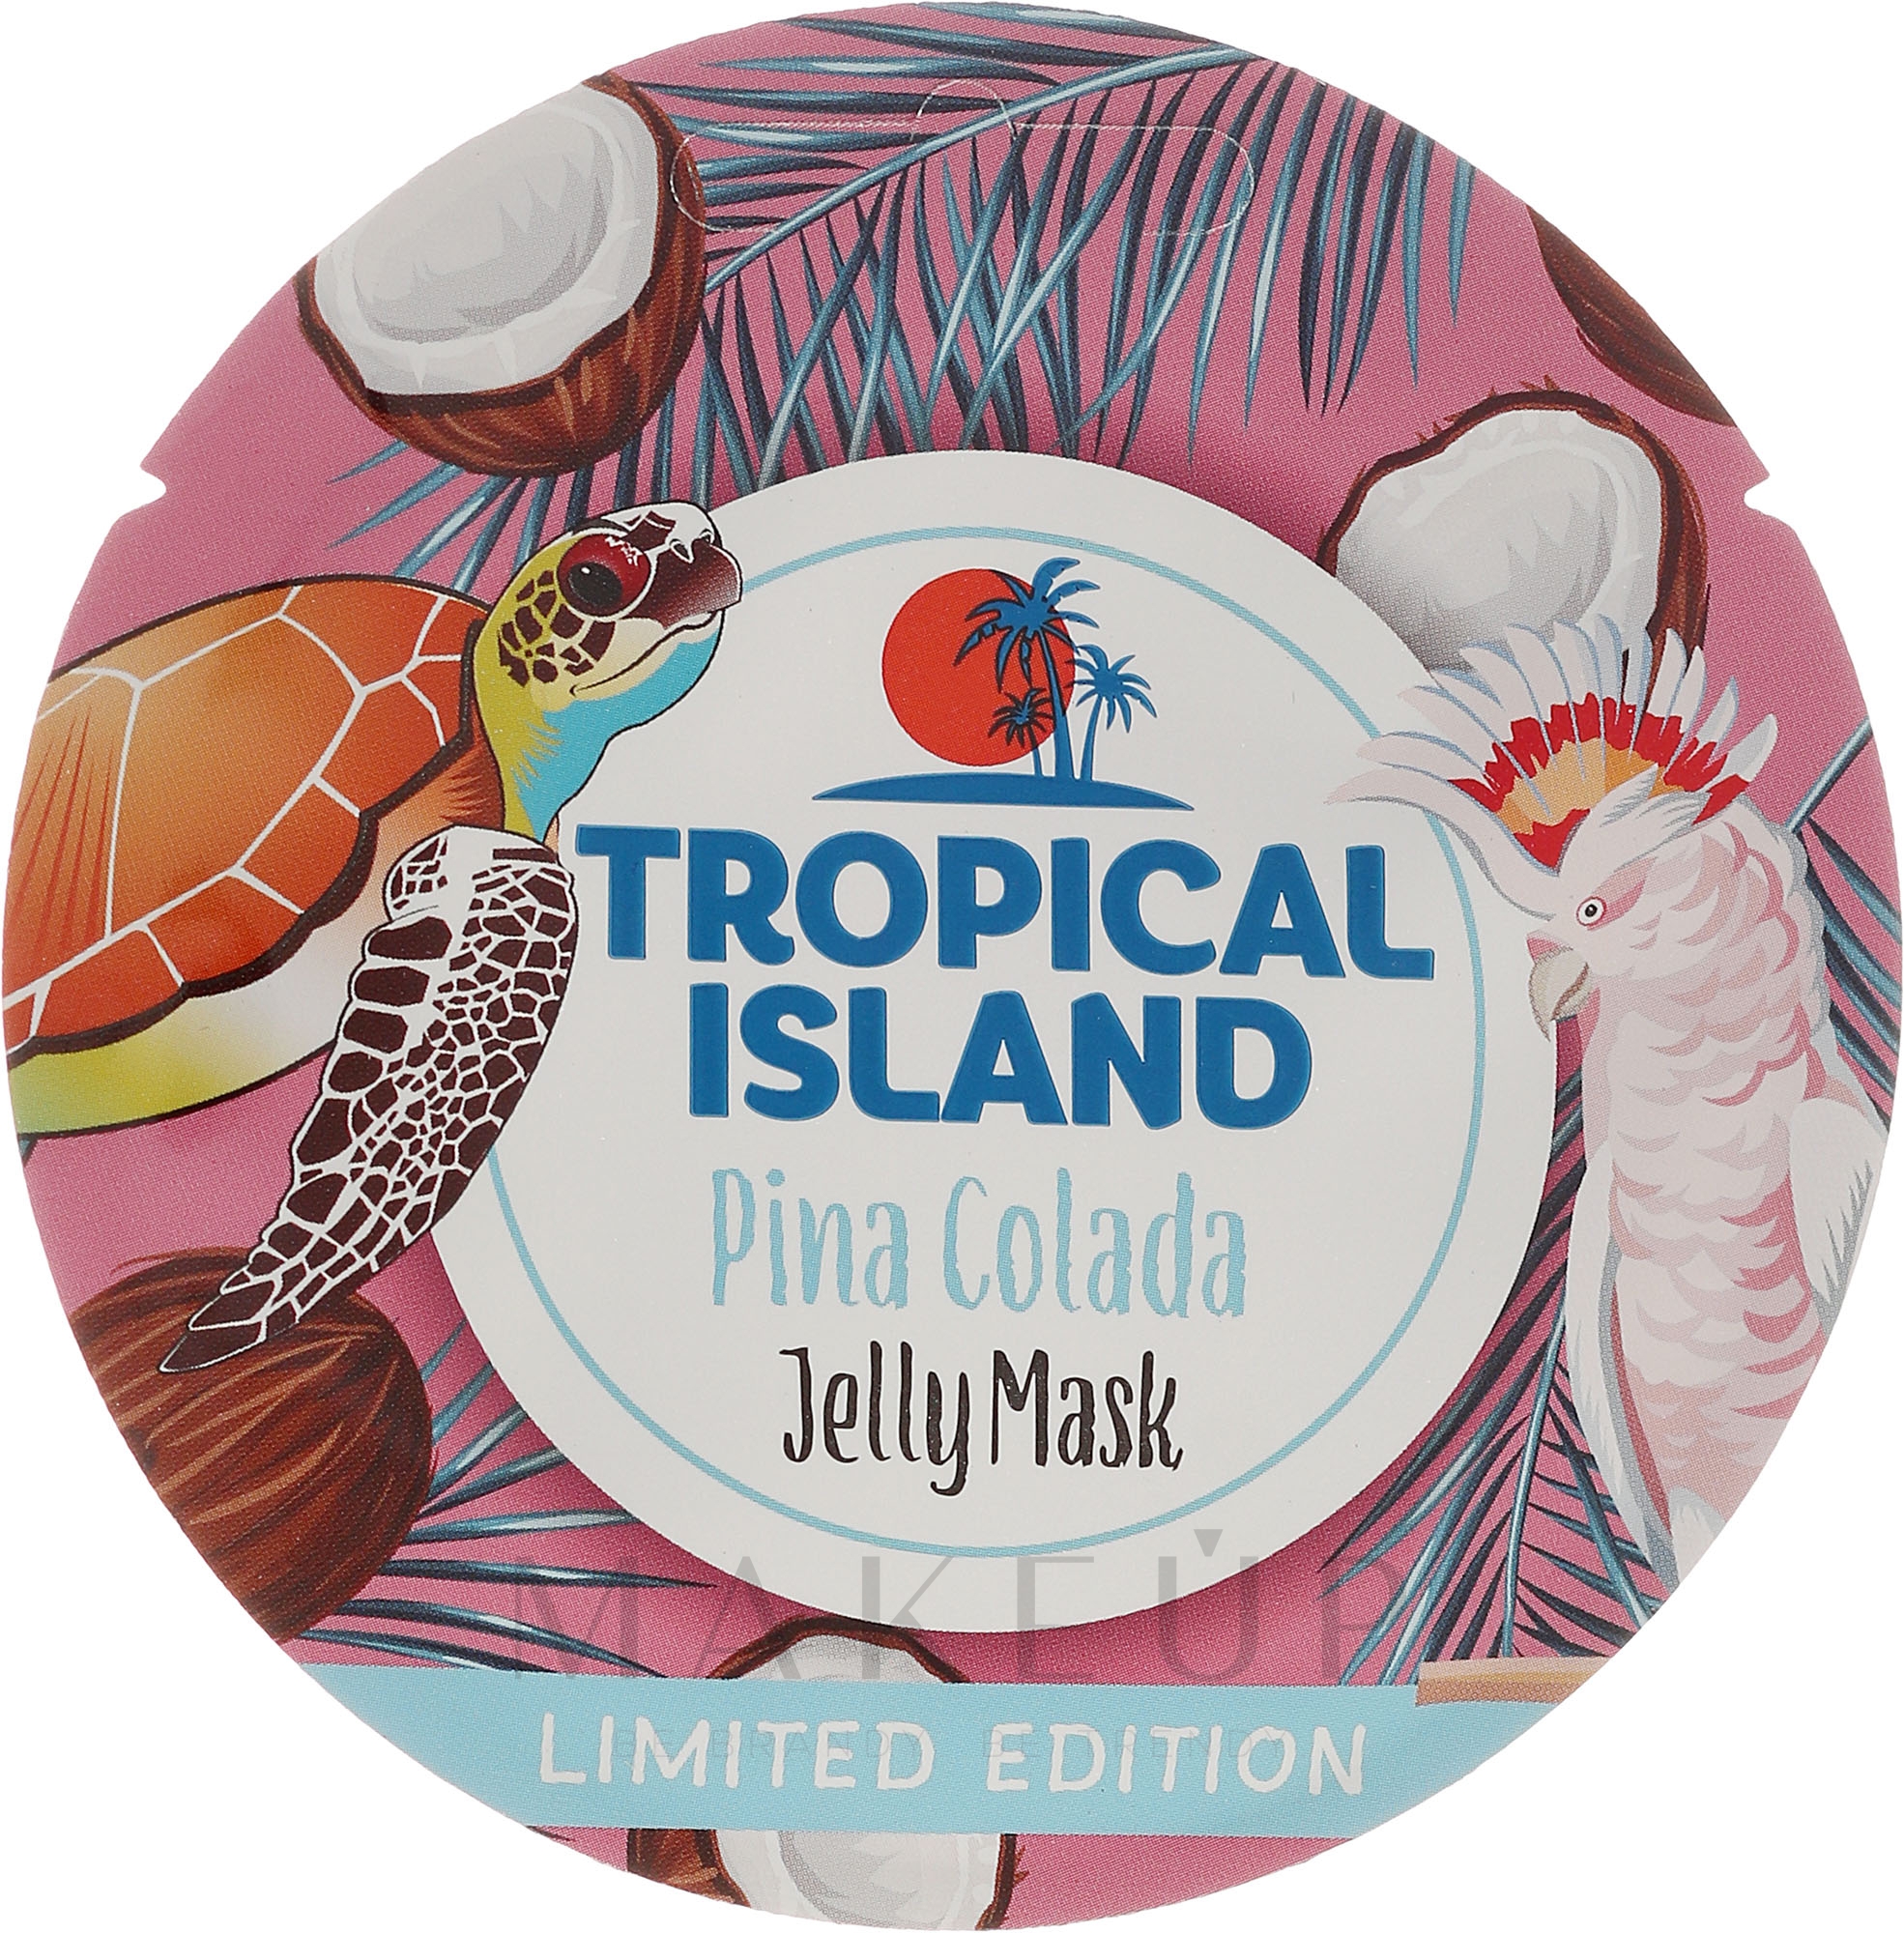 Gelee-Maske für das Gesicht mit Aroma von Pina Colada - Marion Tropical Island Pina Colada Jelly Mask — Foto 10 g